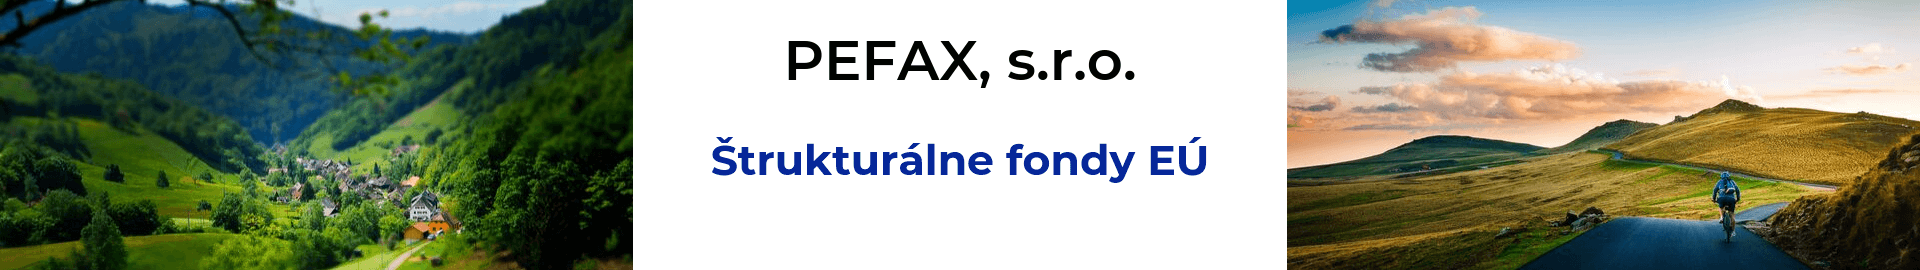 PEFAX, s.r.o. - poradíme, ako získať štrukturálne fondy EÚ 